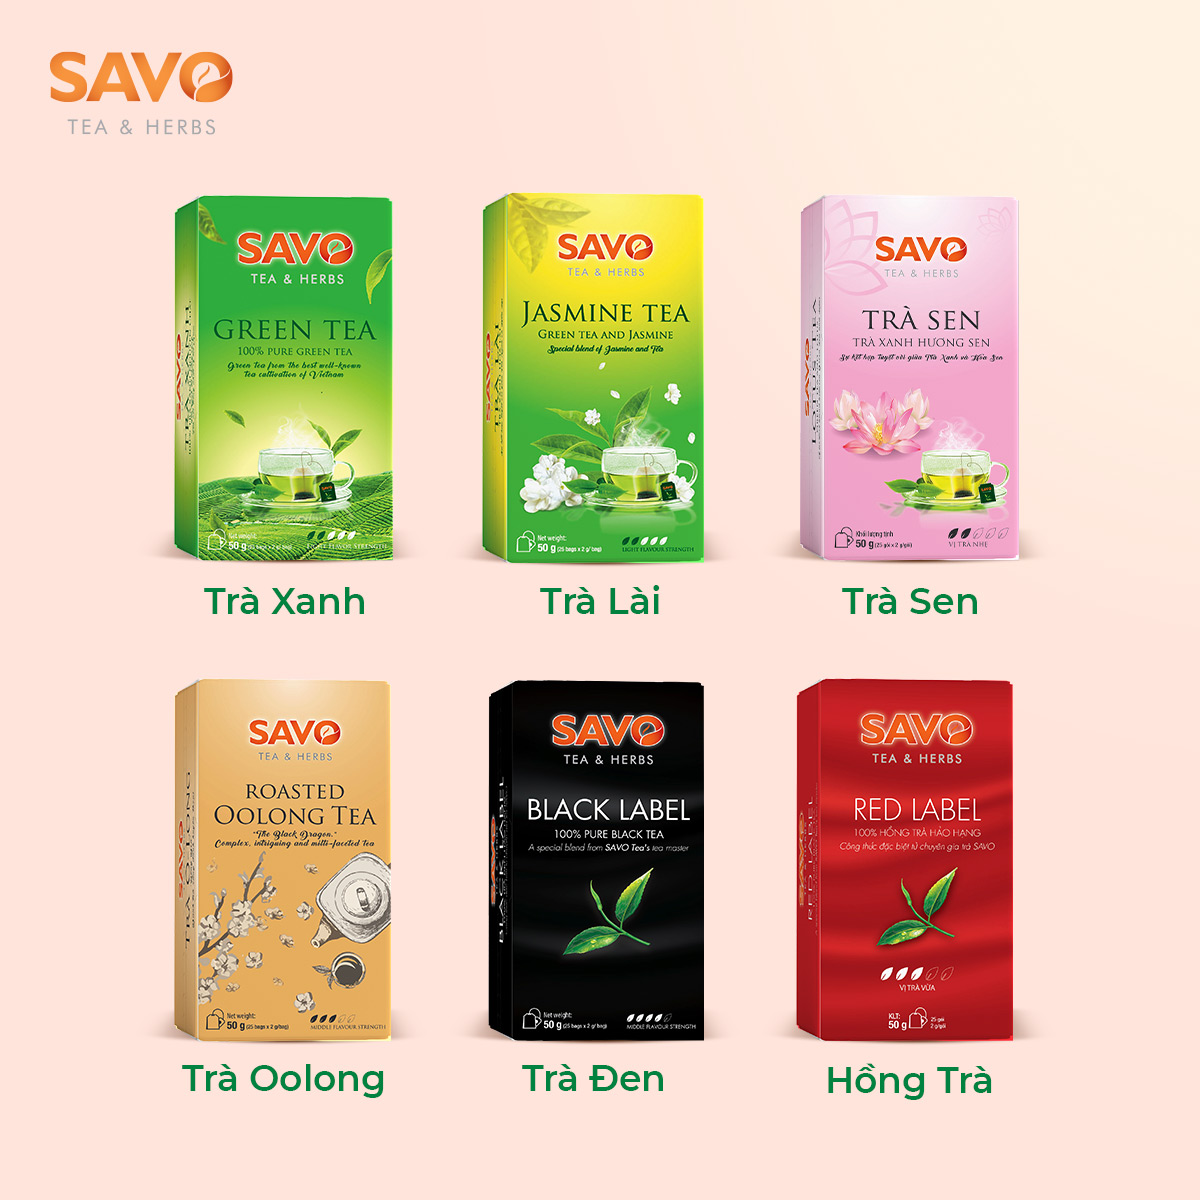 Trà Xanh SAVO Tea túi lọc (Green Tea) - Hộp 25 Gói x 2g